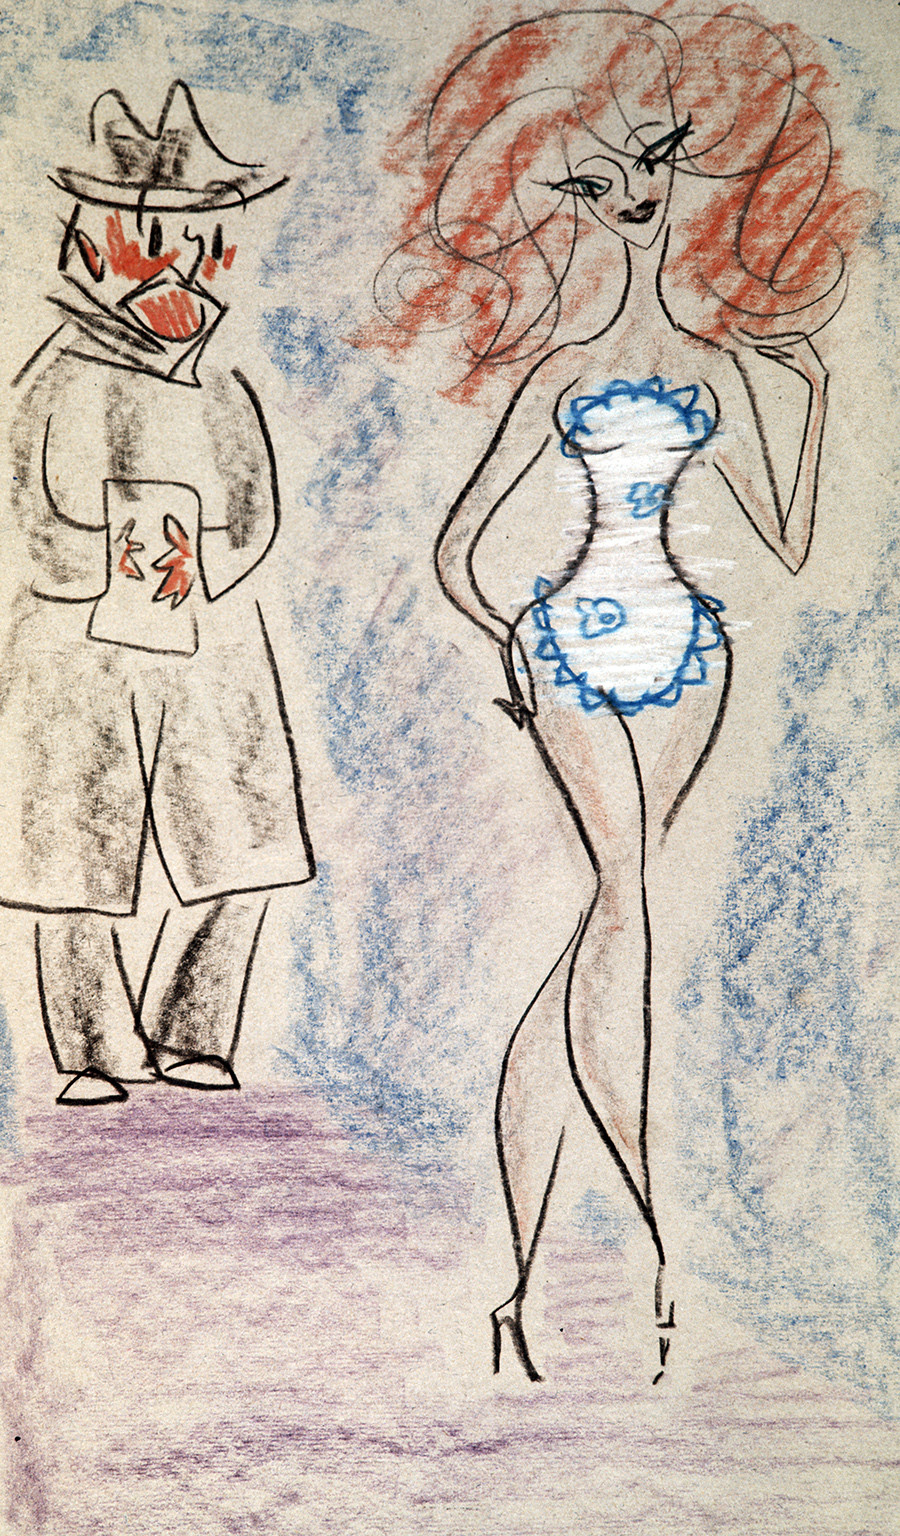 Hella et Domouprav, la scène du roman de Boulgakov Le Maître et Marguerite, 1968